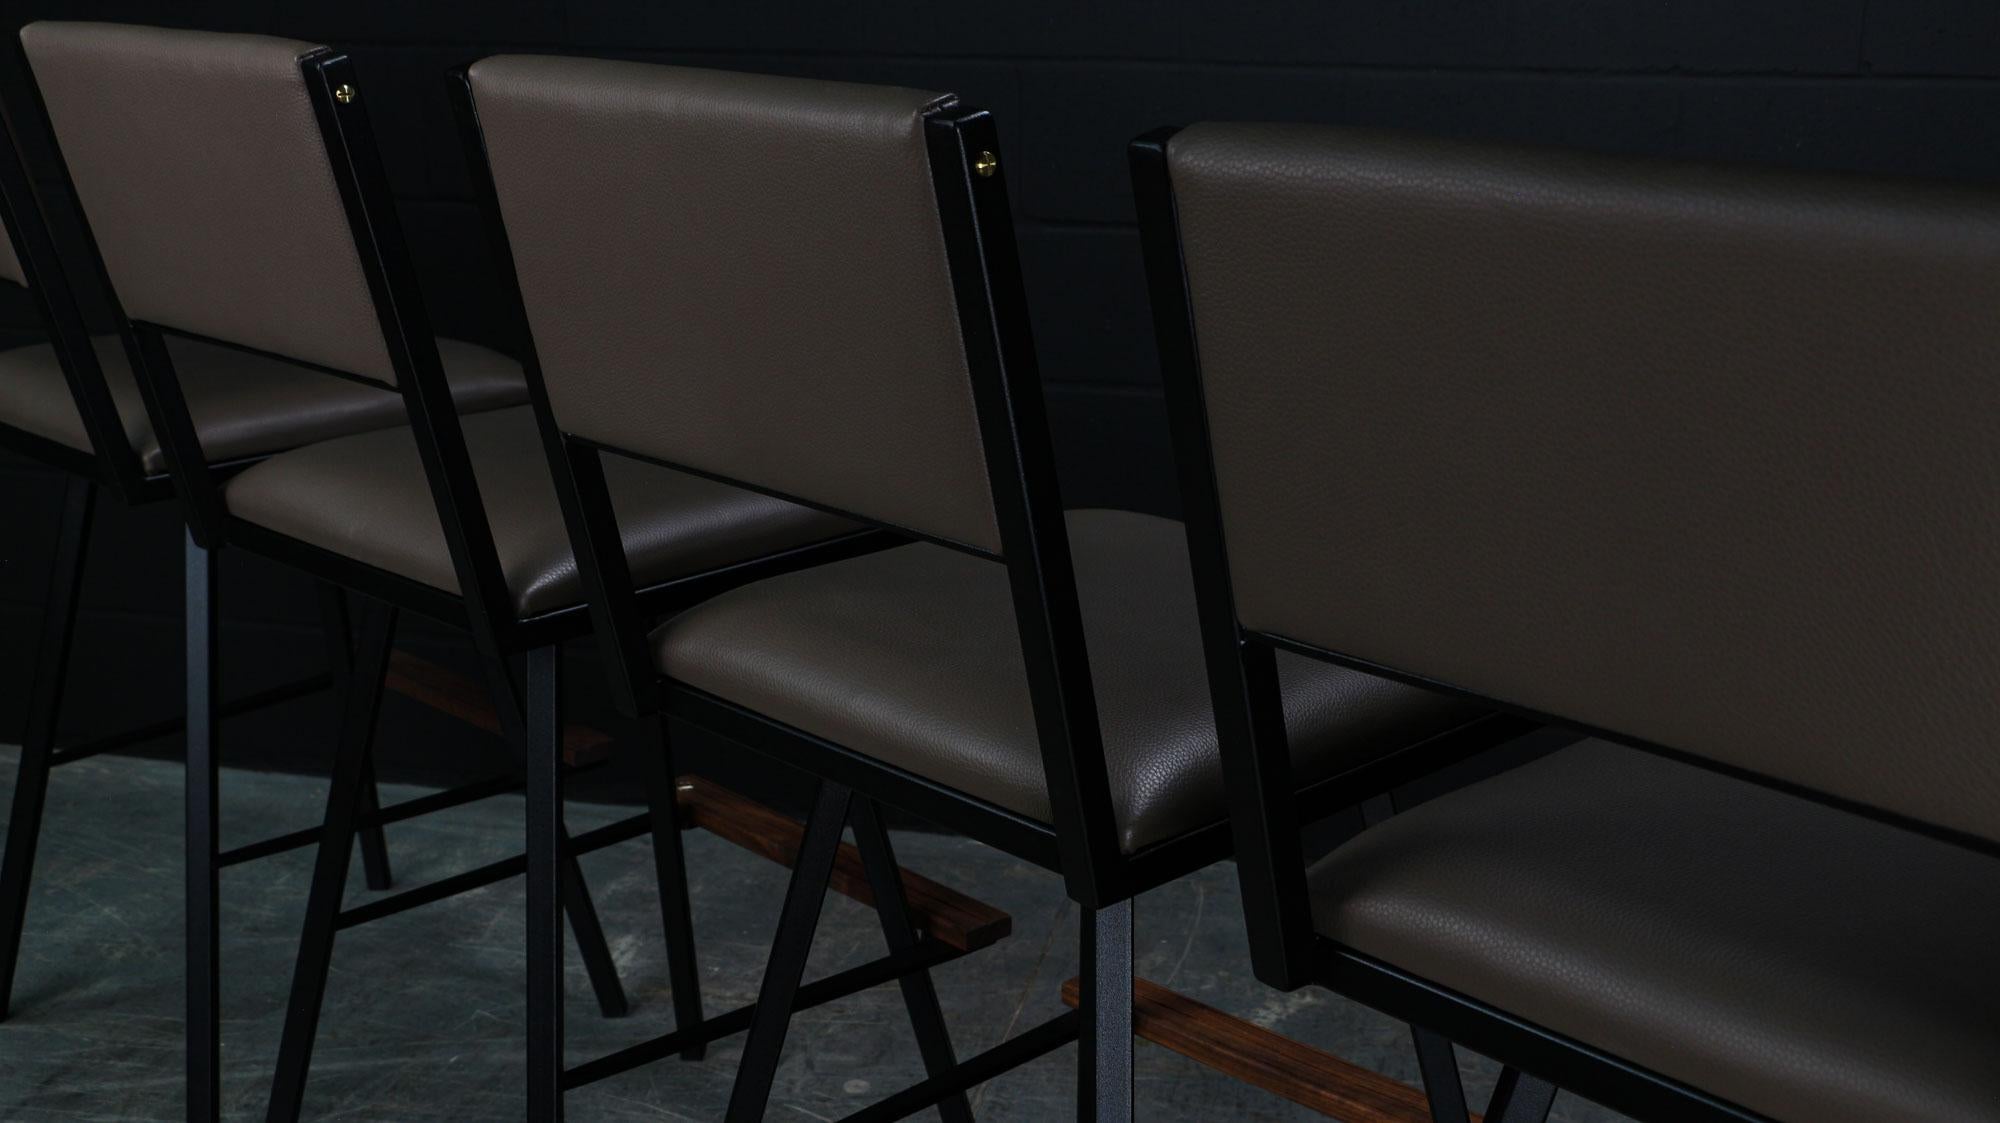 Der Shaker Swivel Bar Chair wird auf Bestellung aus unserem einzigartigen, schwarz strukturierten AMBROZIA-Stahlrohrrahmen gefertigt. Dieser zeitgenössische / moderne Bar-Drehstuhl ist in einer großen Auswahl an echten Ledern, Vinyls und Fellen